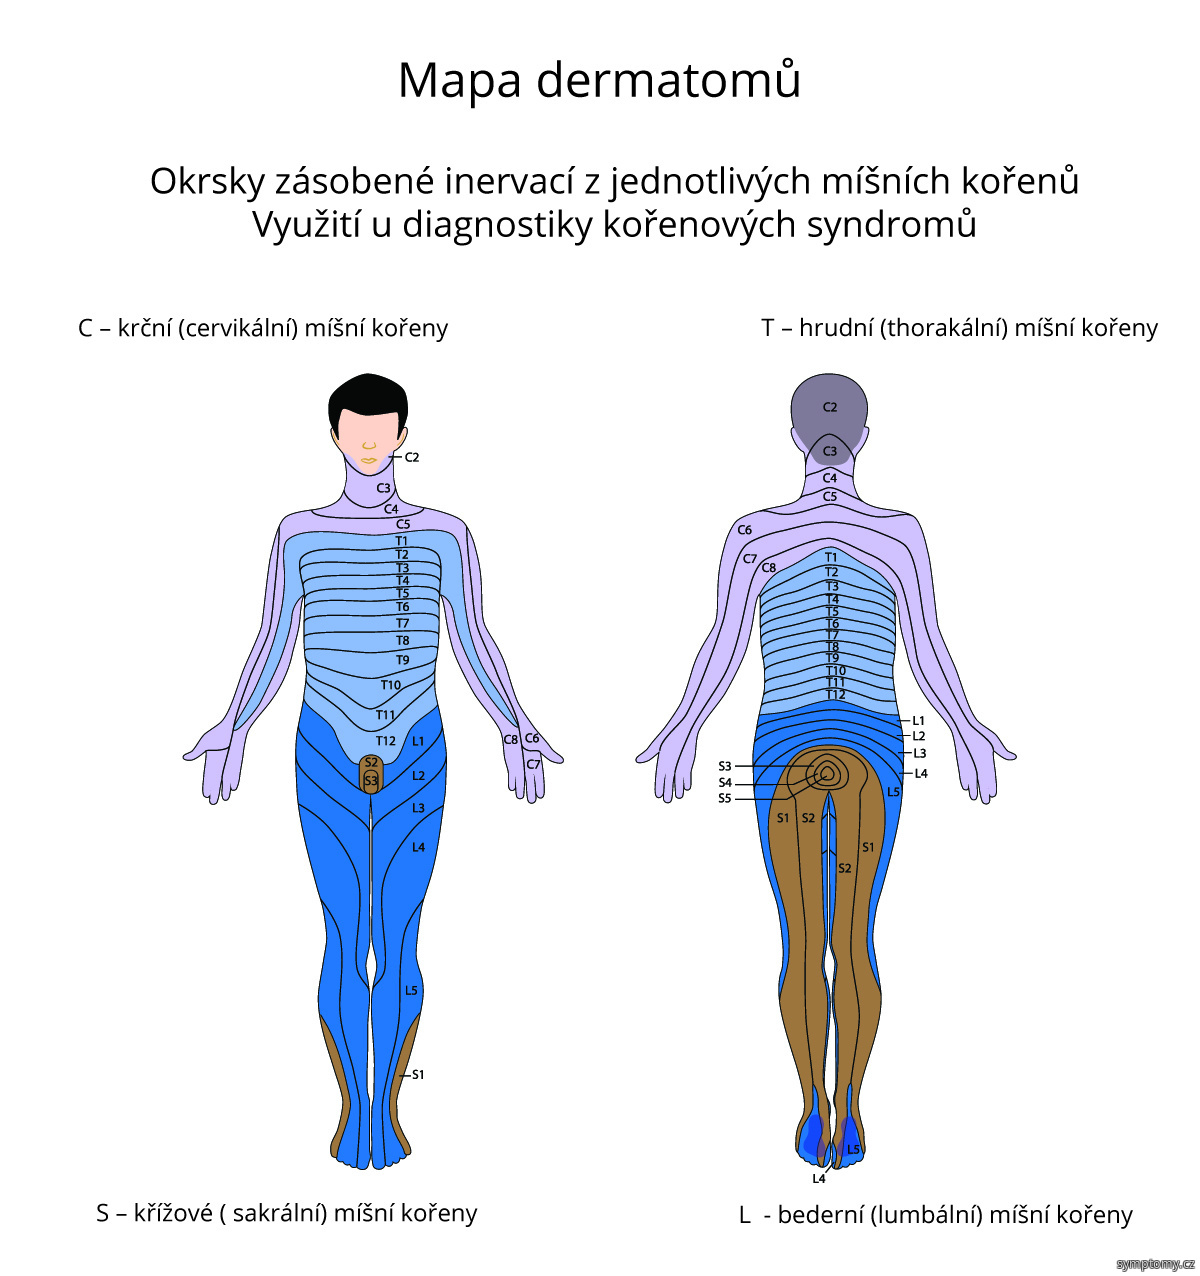 Mapa dermatomů